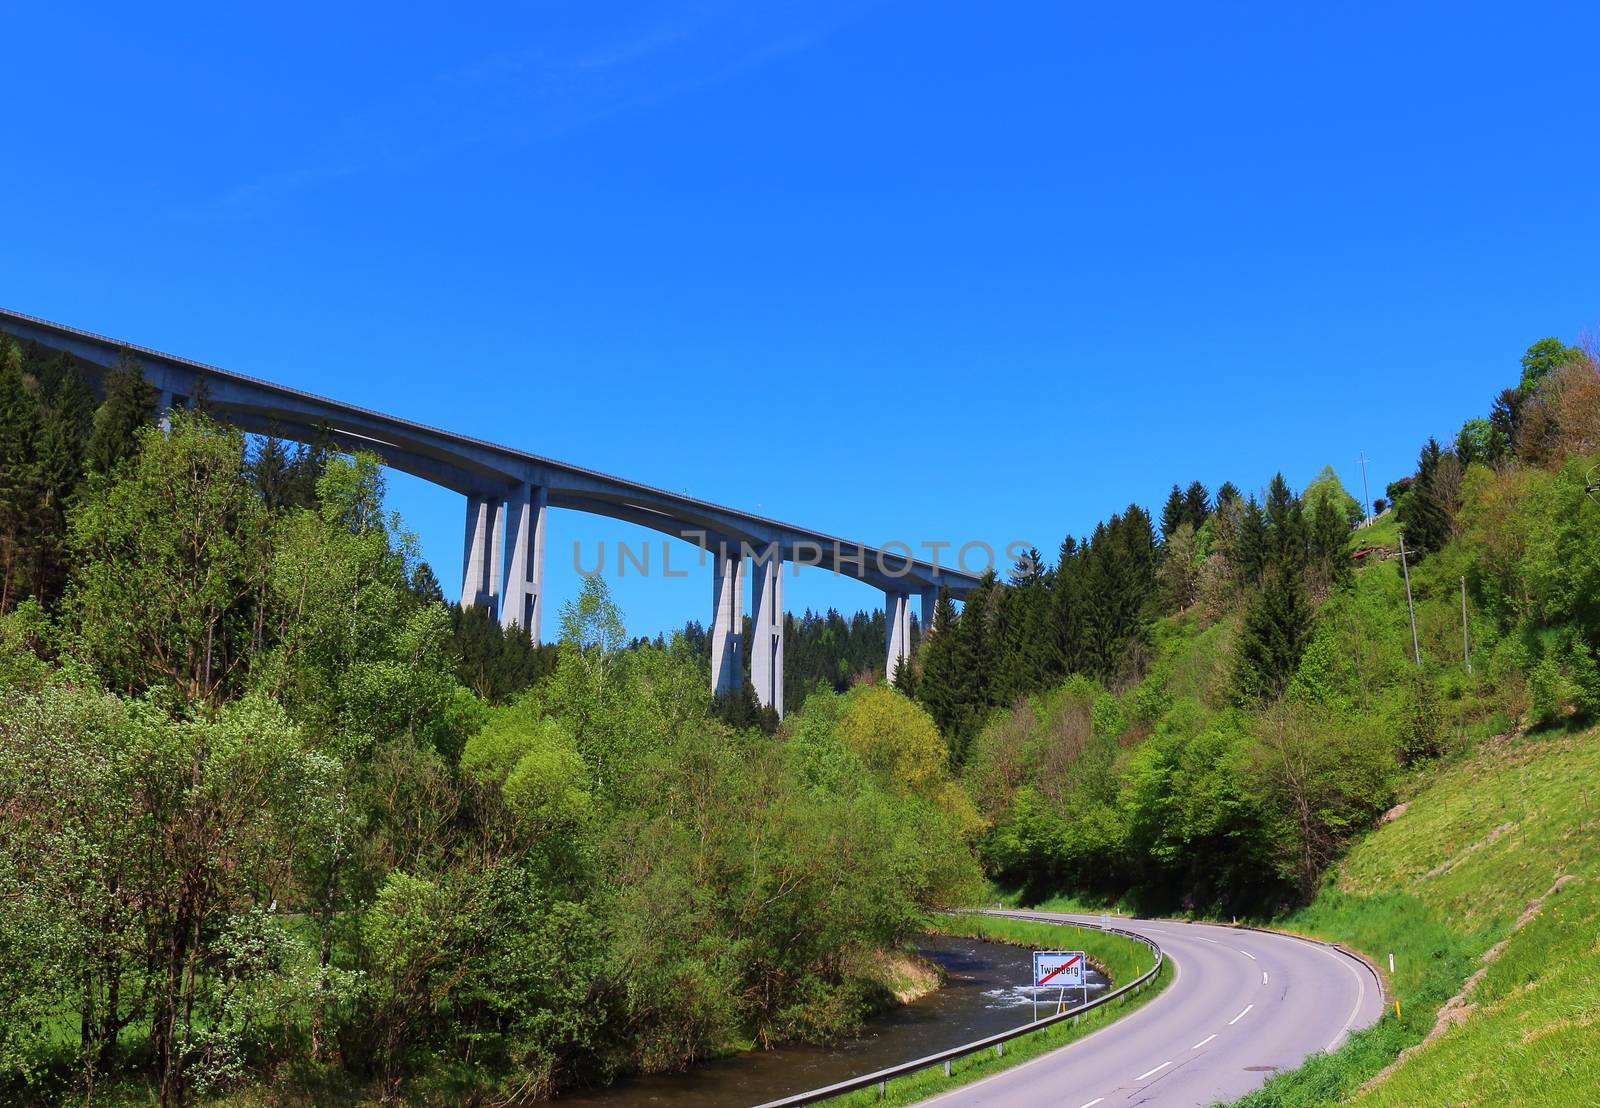 The famous bridge in the Lavant Valley, Austria